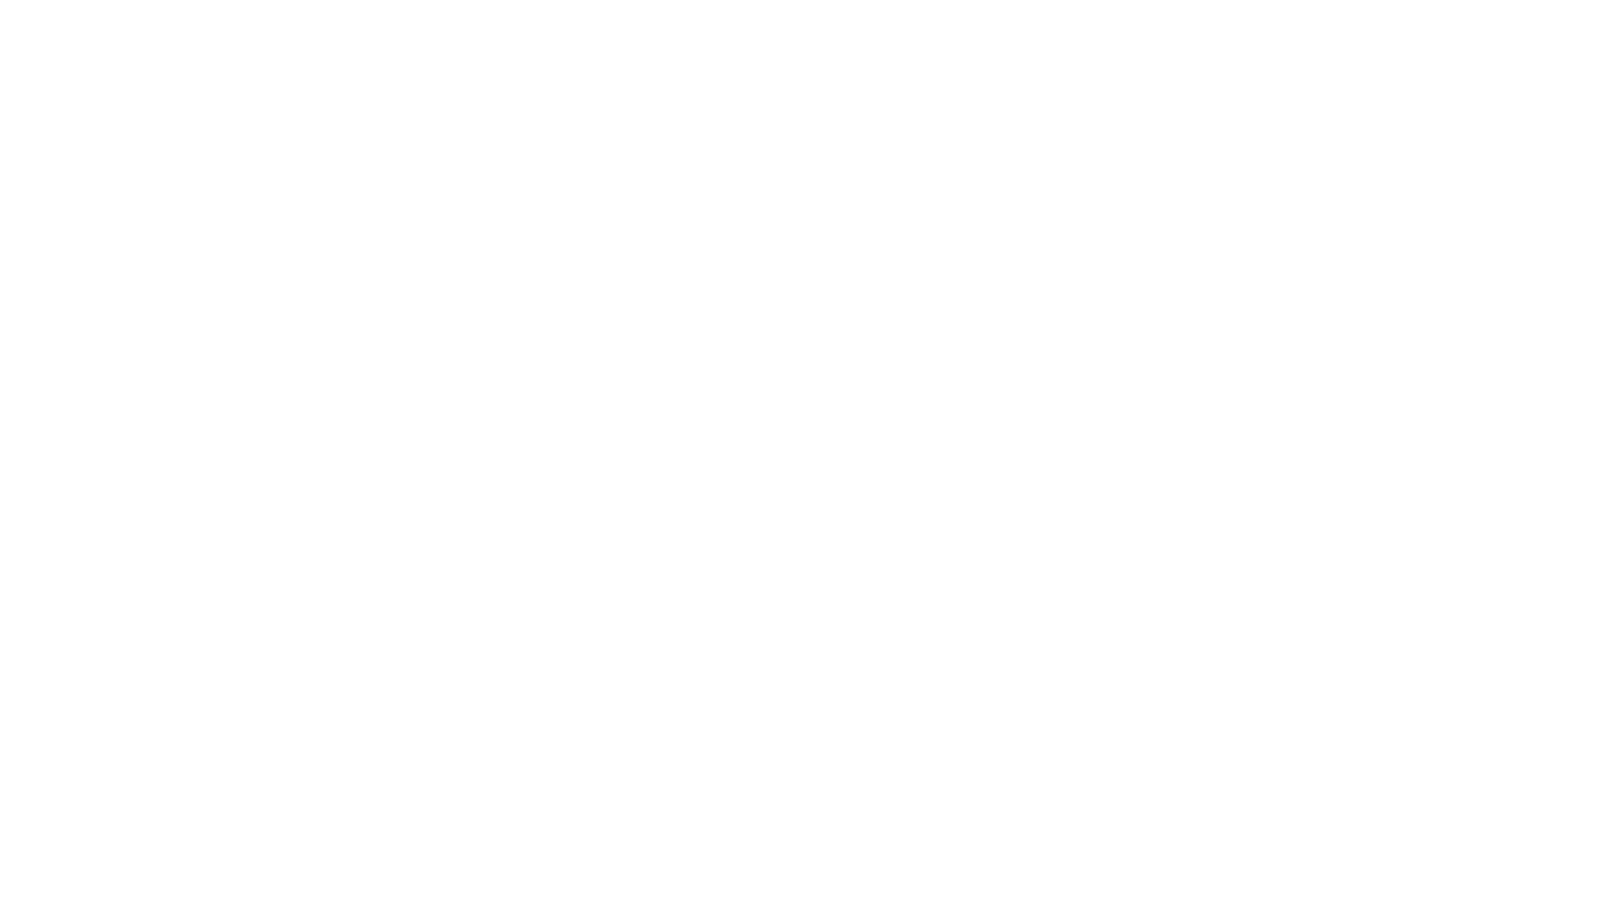 2011 с. Боотулуу нэһилиэгэ төрүттэммитэ 240 сылыгар ыытыллыбыт үбүлүөйдээх ыһыах. Ф.К.Максимов устуута.<br />Үөһээ Бүлүүтээҕи киин библиотека кыраайы үөрэтэр отделын архыыбыттан.<br />Боотулуу нэһилиэгэ төрүттэммитэ 250 сылынан, Үрүҥ Тунах ыһыаҕынан  дьоммутун-сэргэбитин эҕэрдэлиибит. Боотулуулар саха сирин араас улуустарыгар, киин куоракка, ханна да буолбуттарын иһин куруук инники күөҥҥэ буолаллар. Дойдубут ыччата сырдыкка, үөрэххэ, үлэҕэ күүстээхтик тардыһар. Аҕа көлүөнэ хоһуун үлэһит, күүстээх-сымса, ырыаһыт, мындыр сатабыллаах бас дьонунан биллэр, кинилэр мөссүөннэрэ үйэлэргэ умнуллубат.  Нэһилиэк чэчирии сайыннын, үтүө аата ааттана туруохтун!